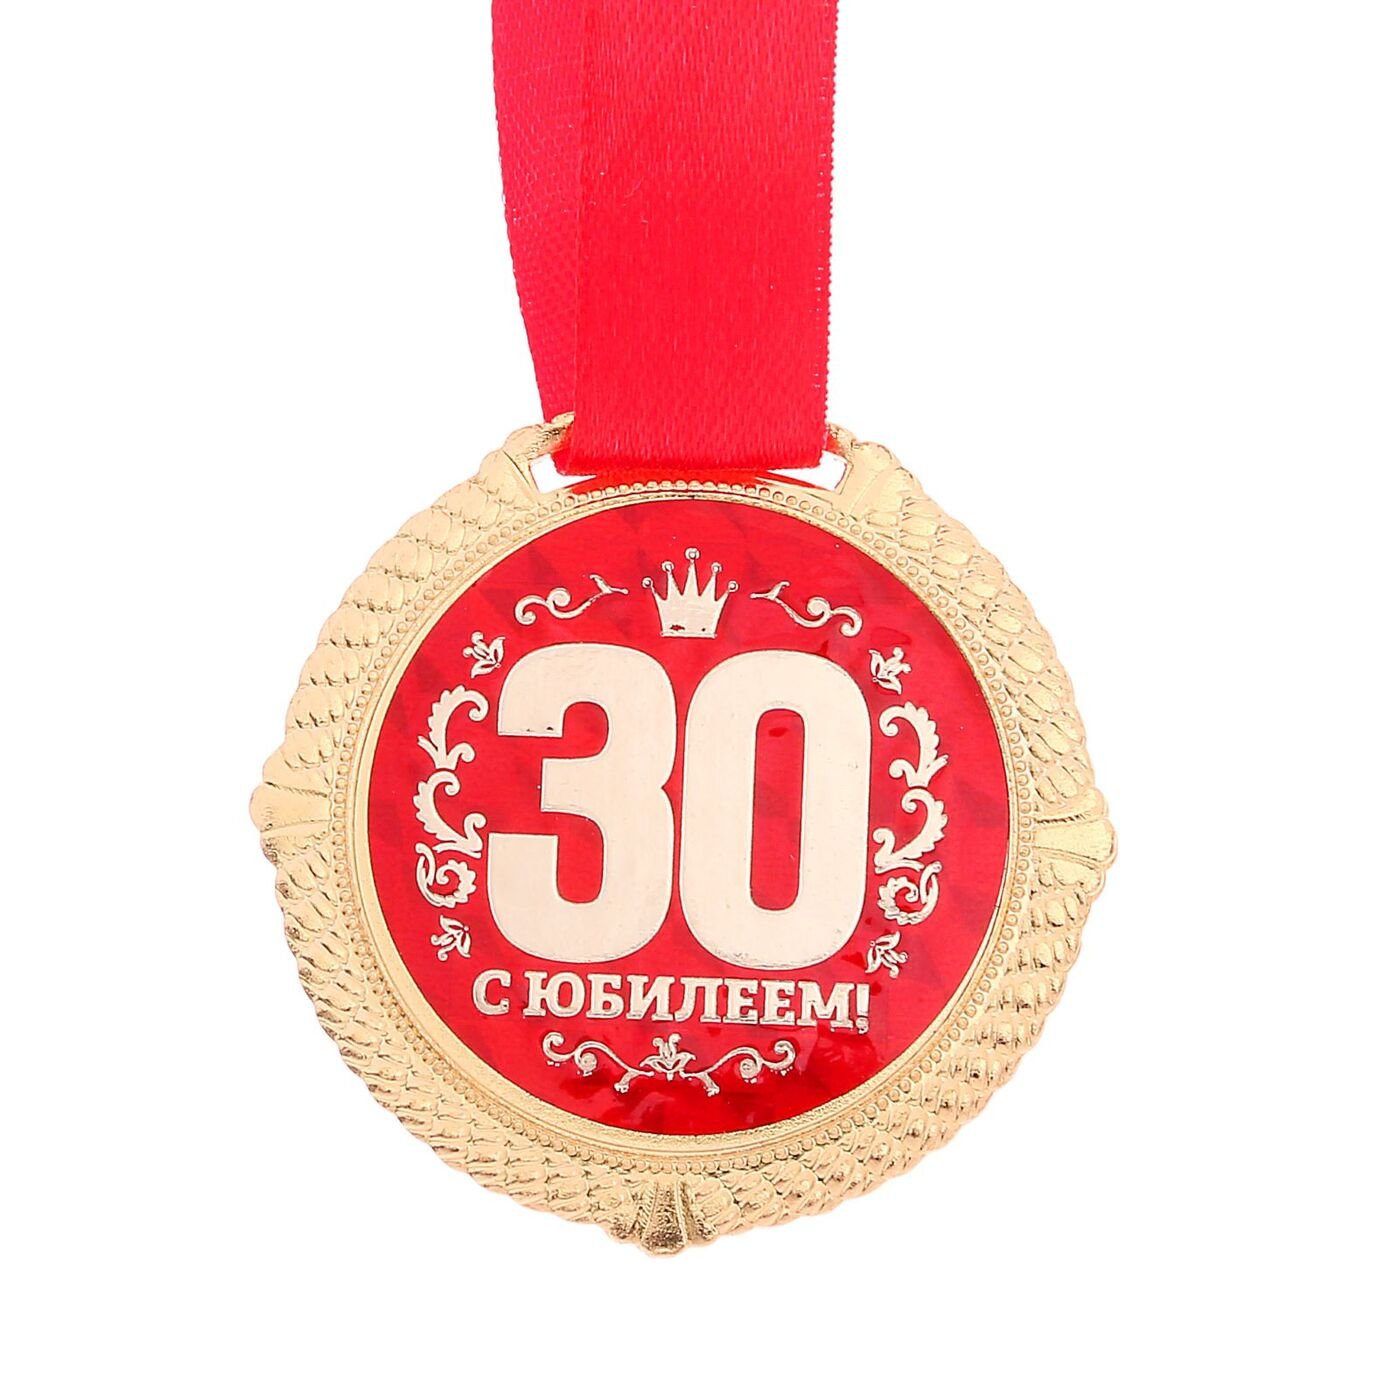 Поздравление с 30 ти. С юбилеем 30 лет. Медаль с юбилеем. Медаль 30 лет. Медаль 30 лет юбилей.